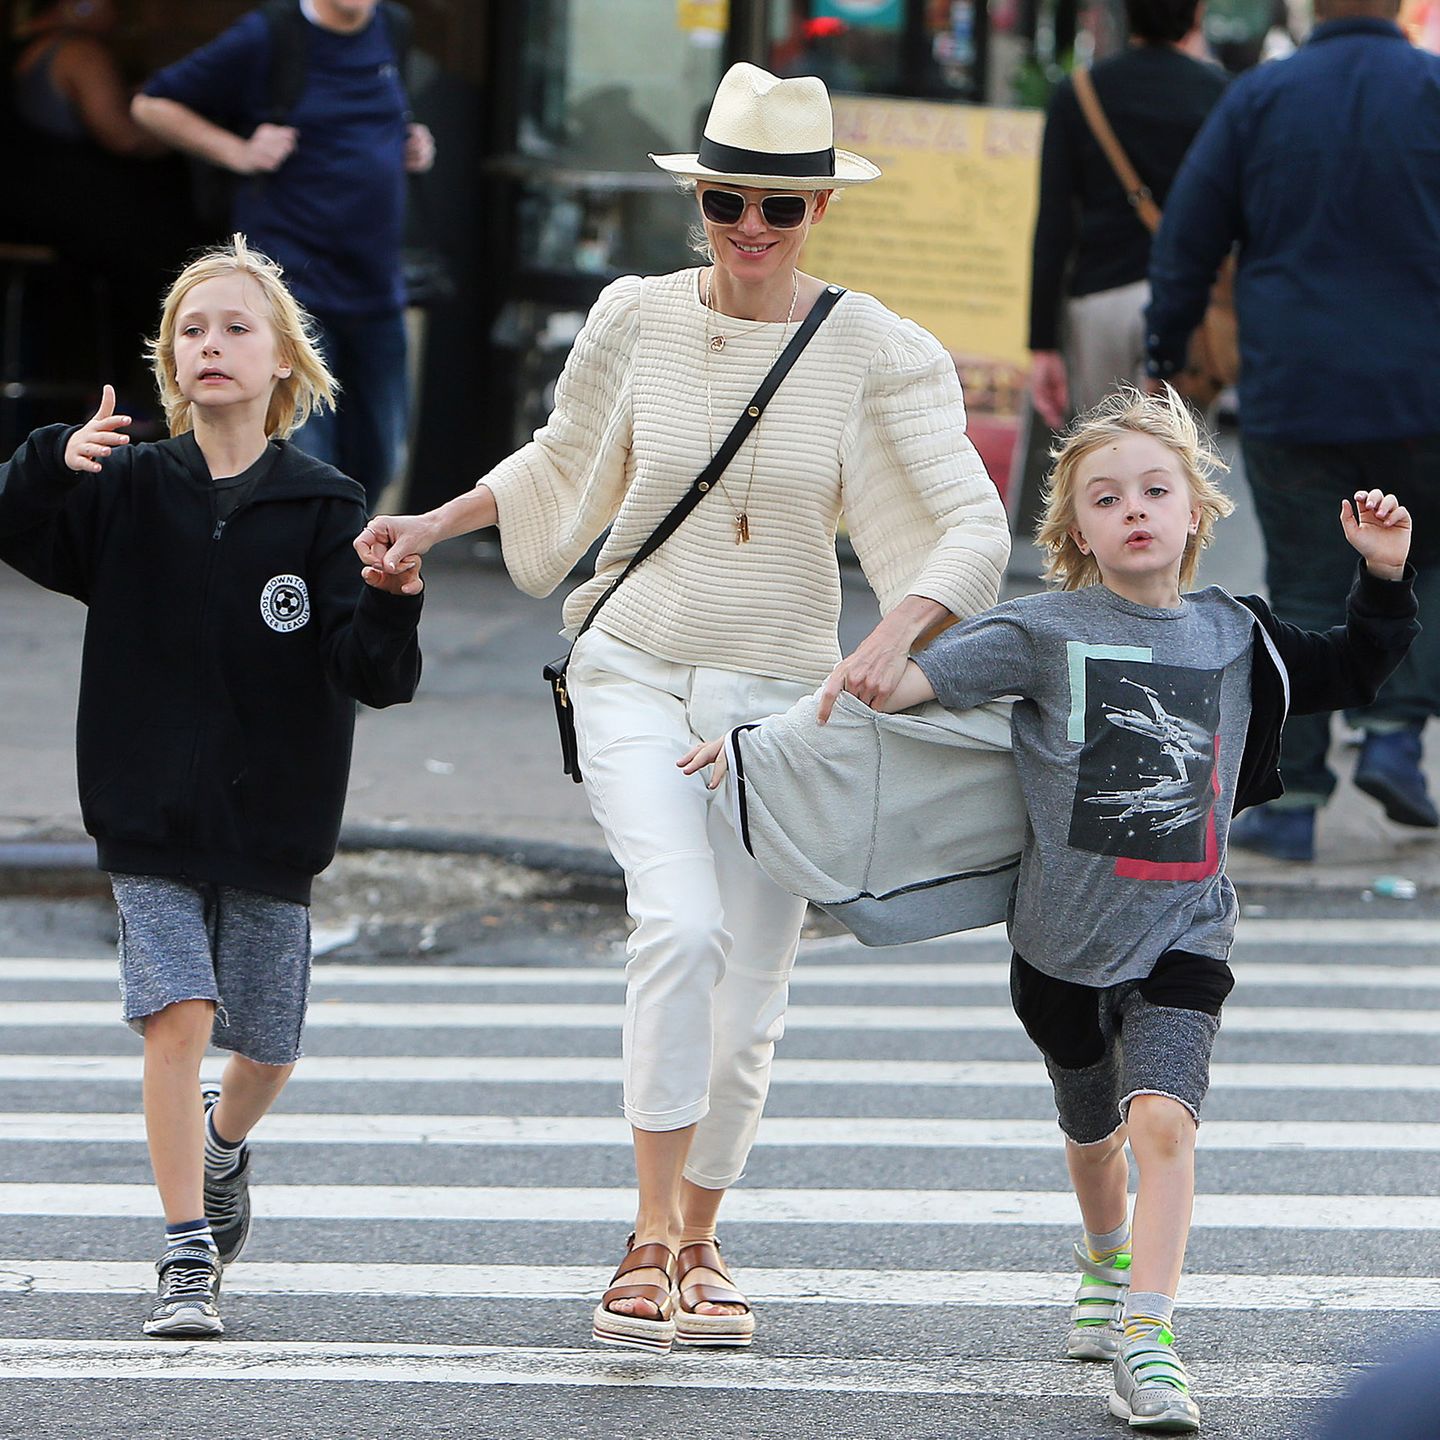 Schnell über den Zebra-Streifen! Naomi Watts passt im dichten Verkehr New Yorks gut auf ihre beiden Jungs Samuel und Alexander auf, und sieht dabei im cremefarbenen-Outfit mit Panama-Hut und schicken Plateau-Sandalen richtig toll aus.